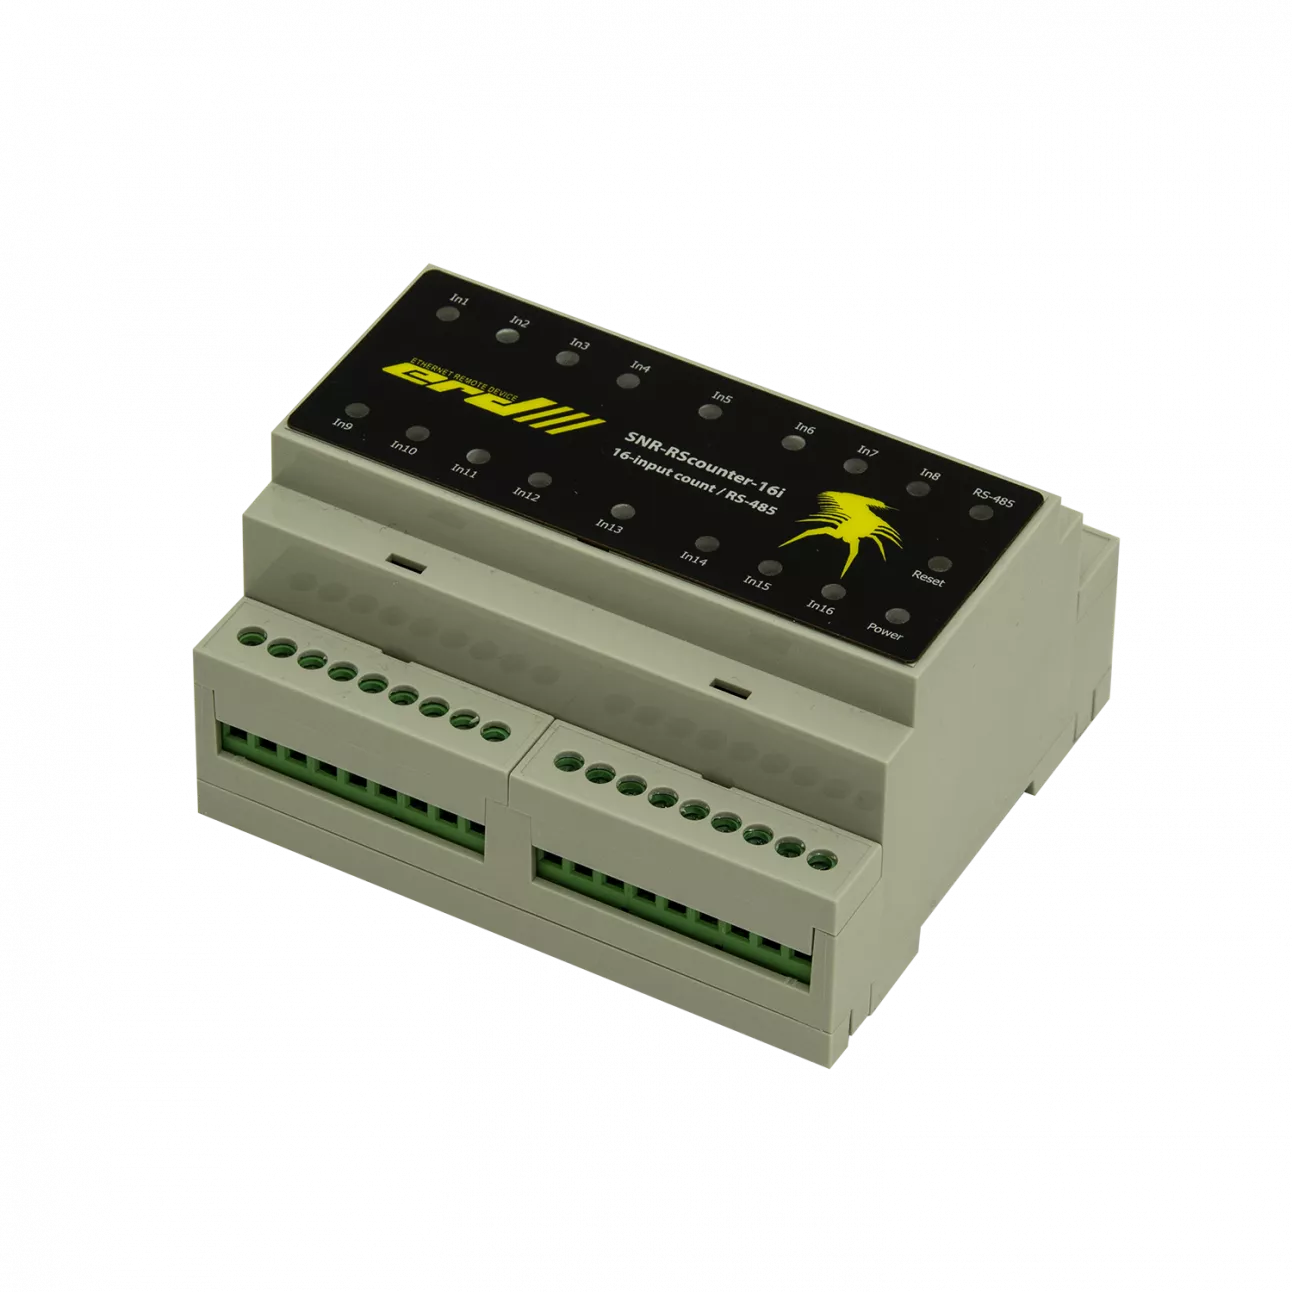 SNR-RScounter-16i-SMART - Универсальный расширитель портов ввода с функцией подсчёта импульсов, RS485 (ModBus и CPD, 16i ) купить в Казани 		Устройство предназначено для увеличения количества портов контроллера SNR-ERD-4 с функцией подсчёт